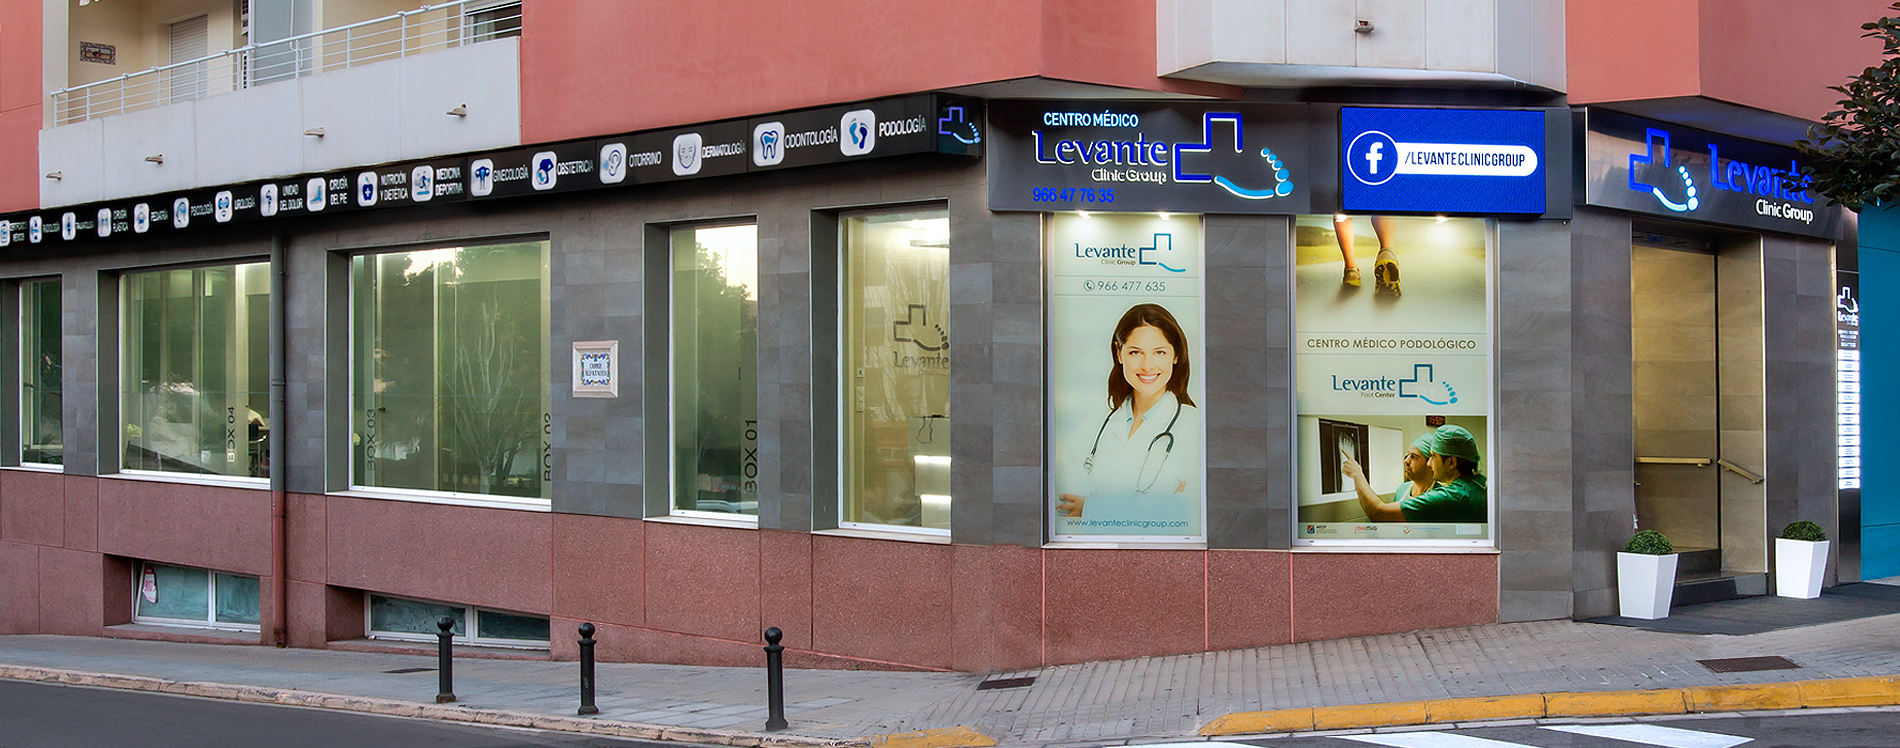 Levante Clinic Group, Centro Médico y Podología en Ondara y Murcia